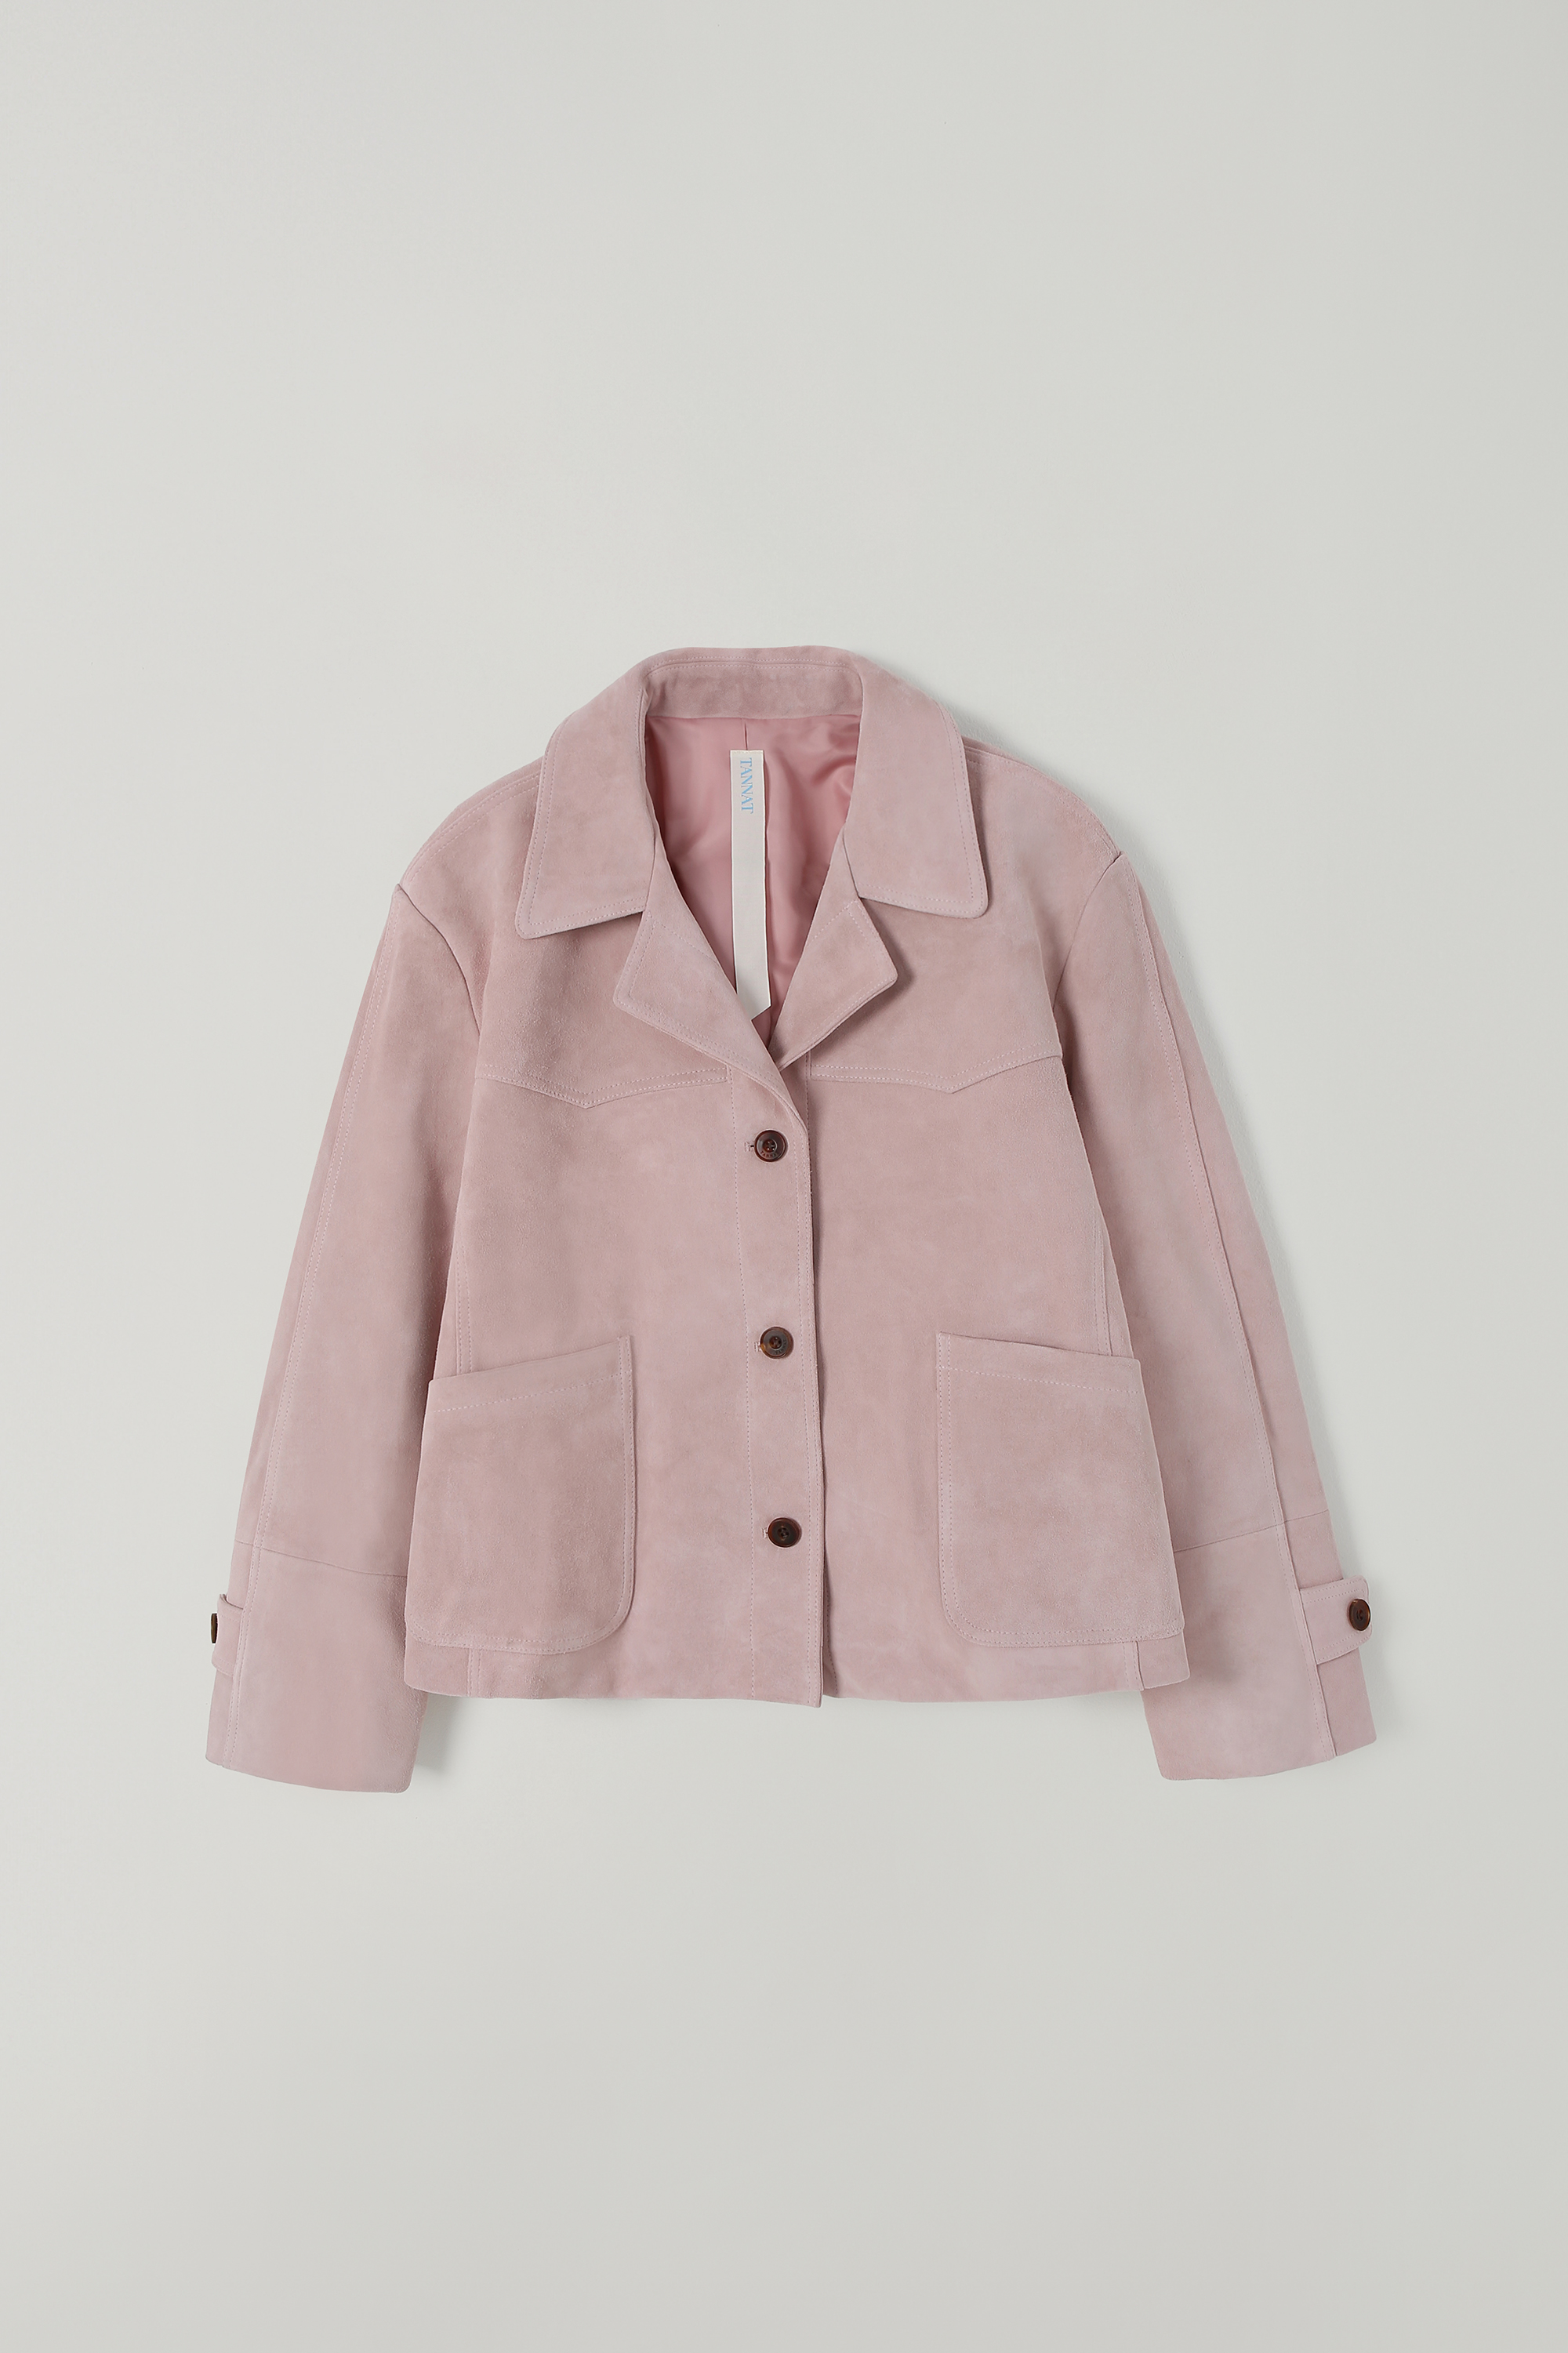 T/T Dear suede jacket (pink)